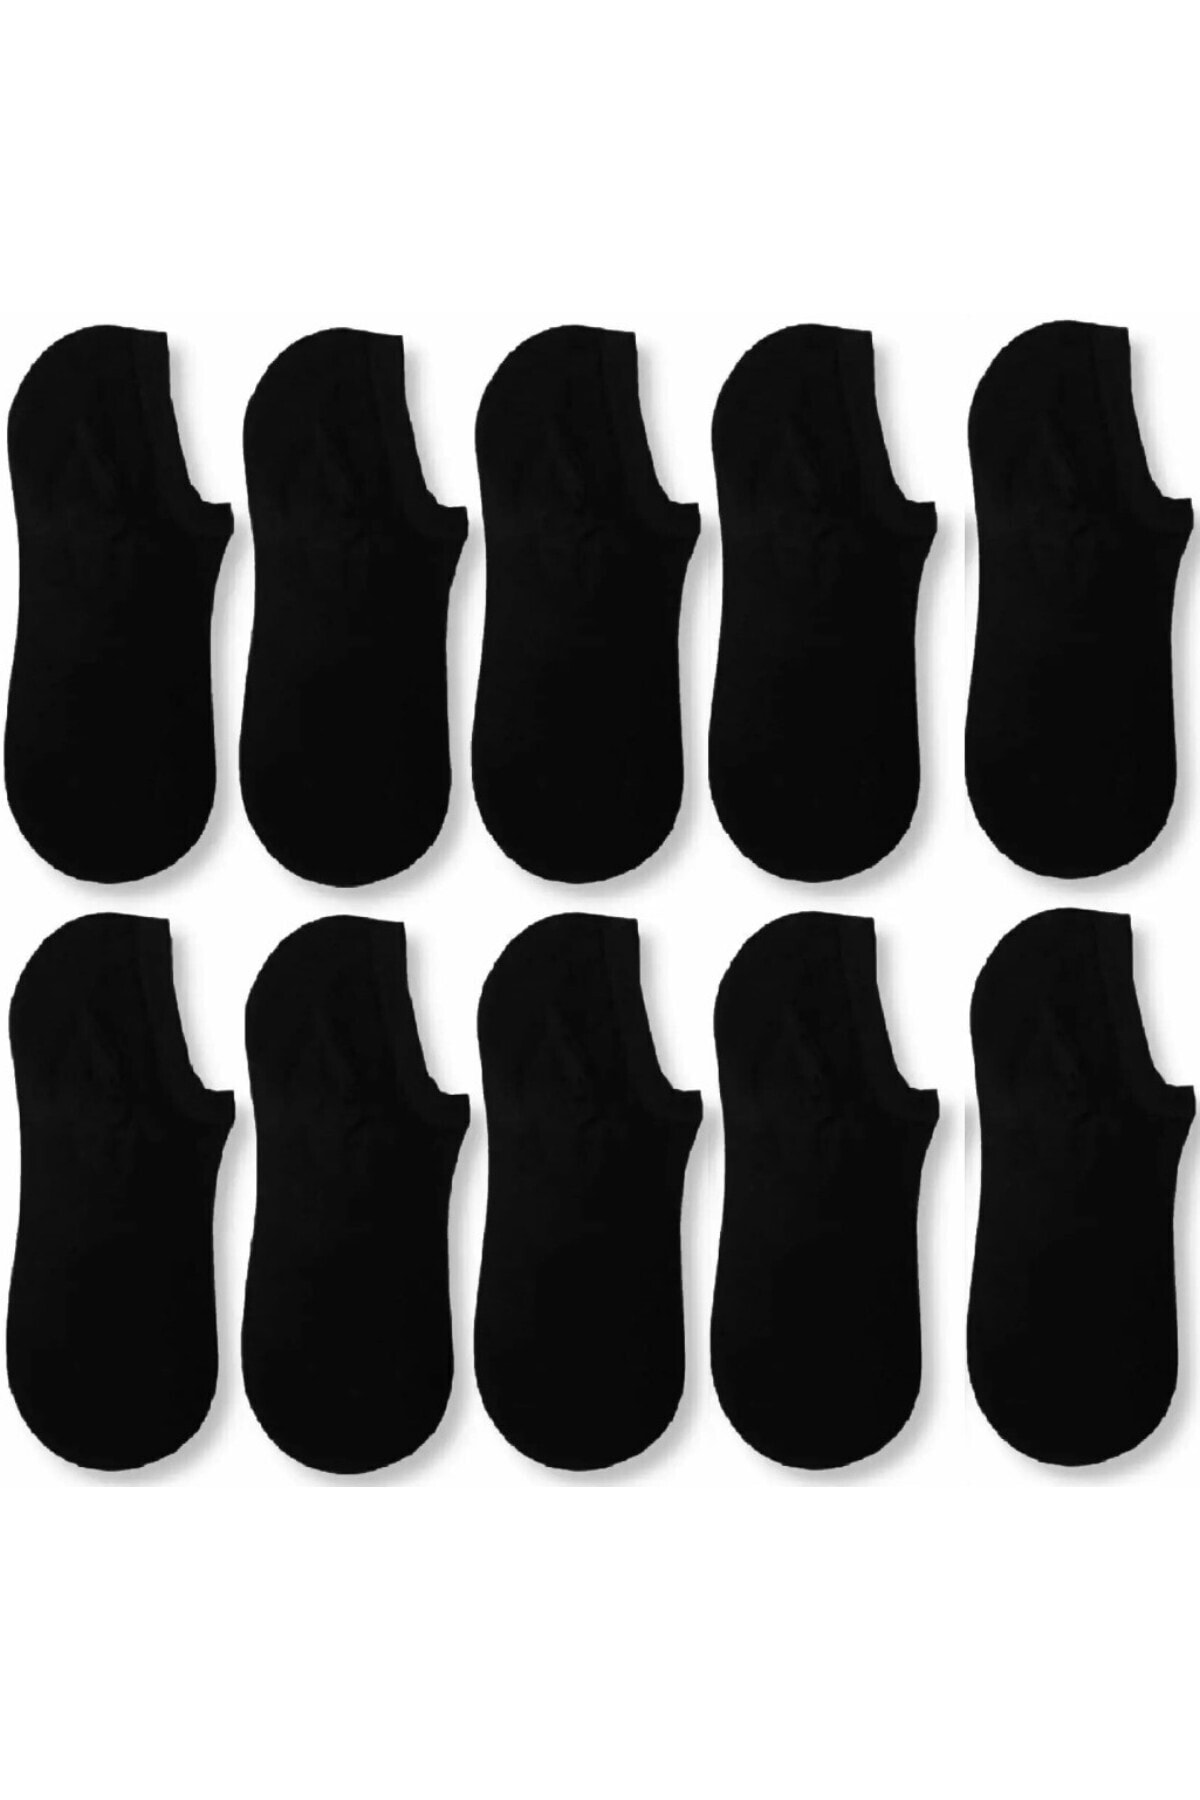 çorapmanya 10 Çift Erkek Siyah Bambu Görünmez (sneaker) Spor Ayakkabı Çorabı